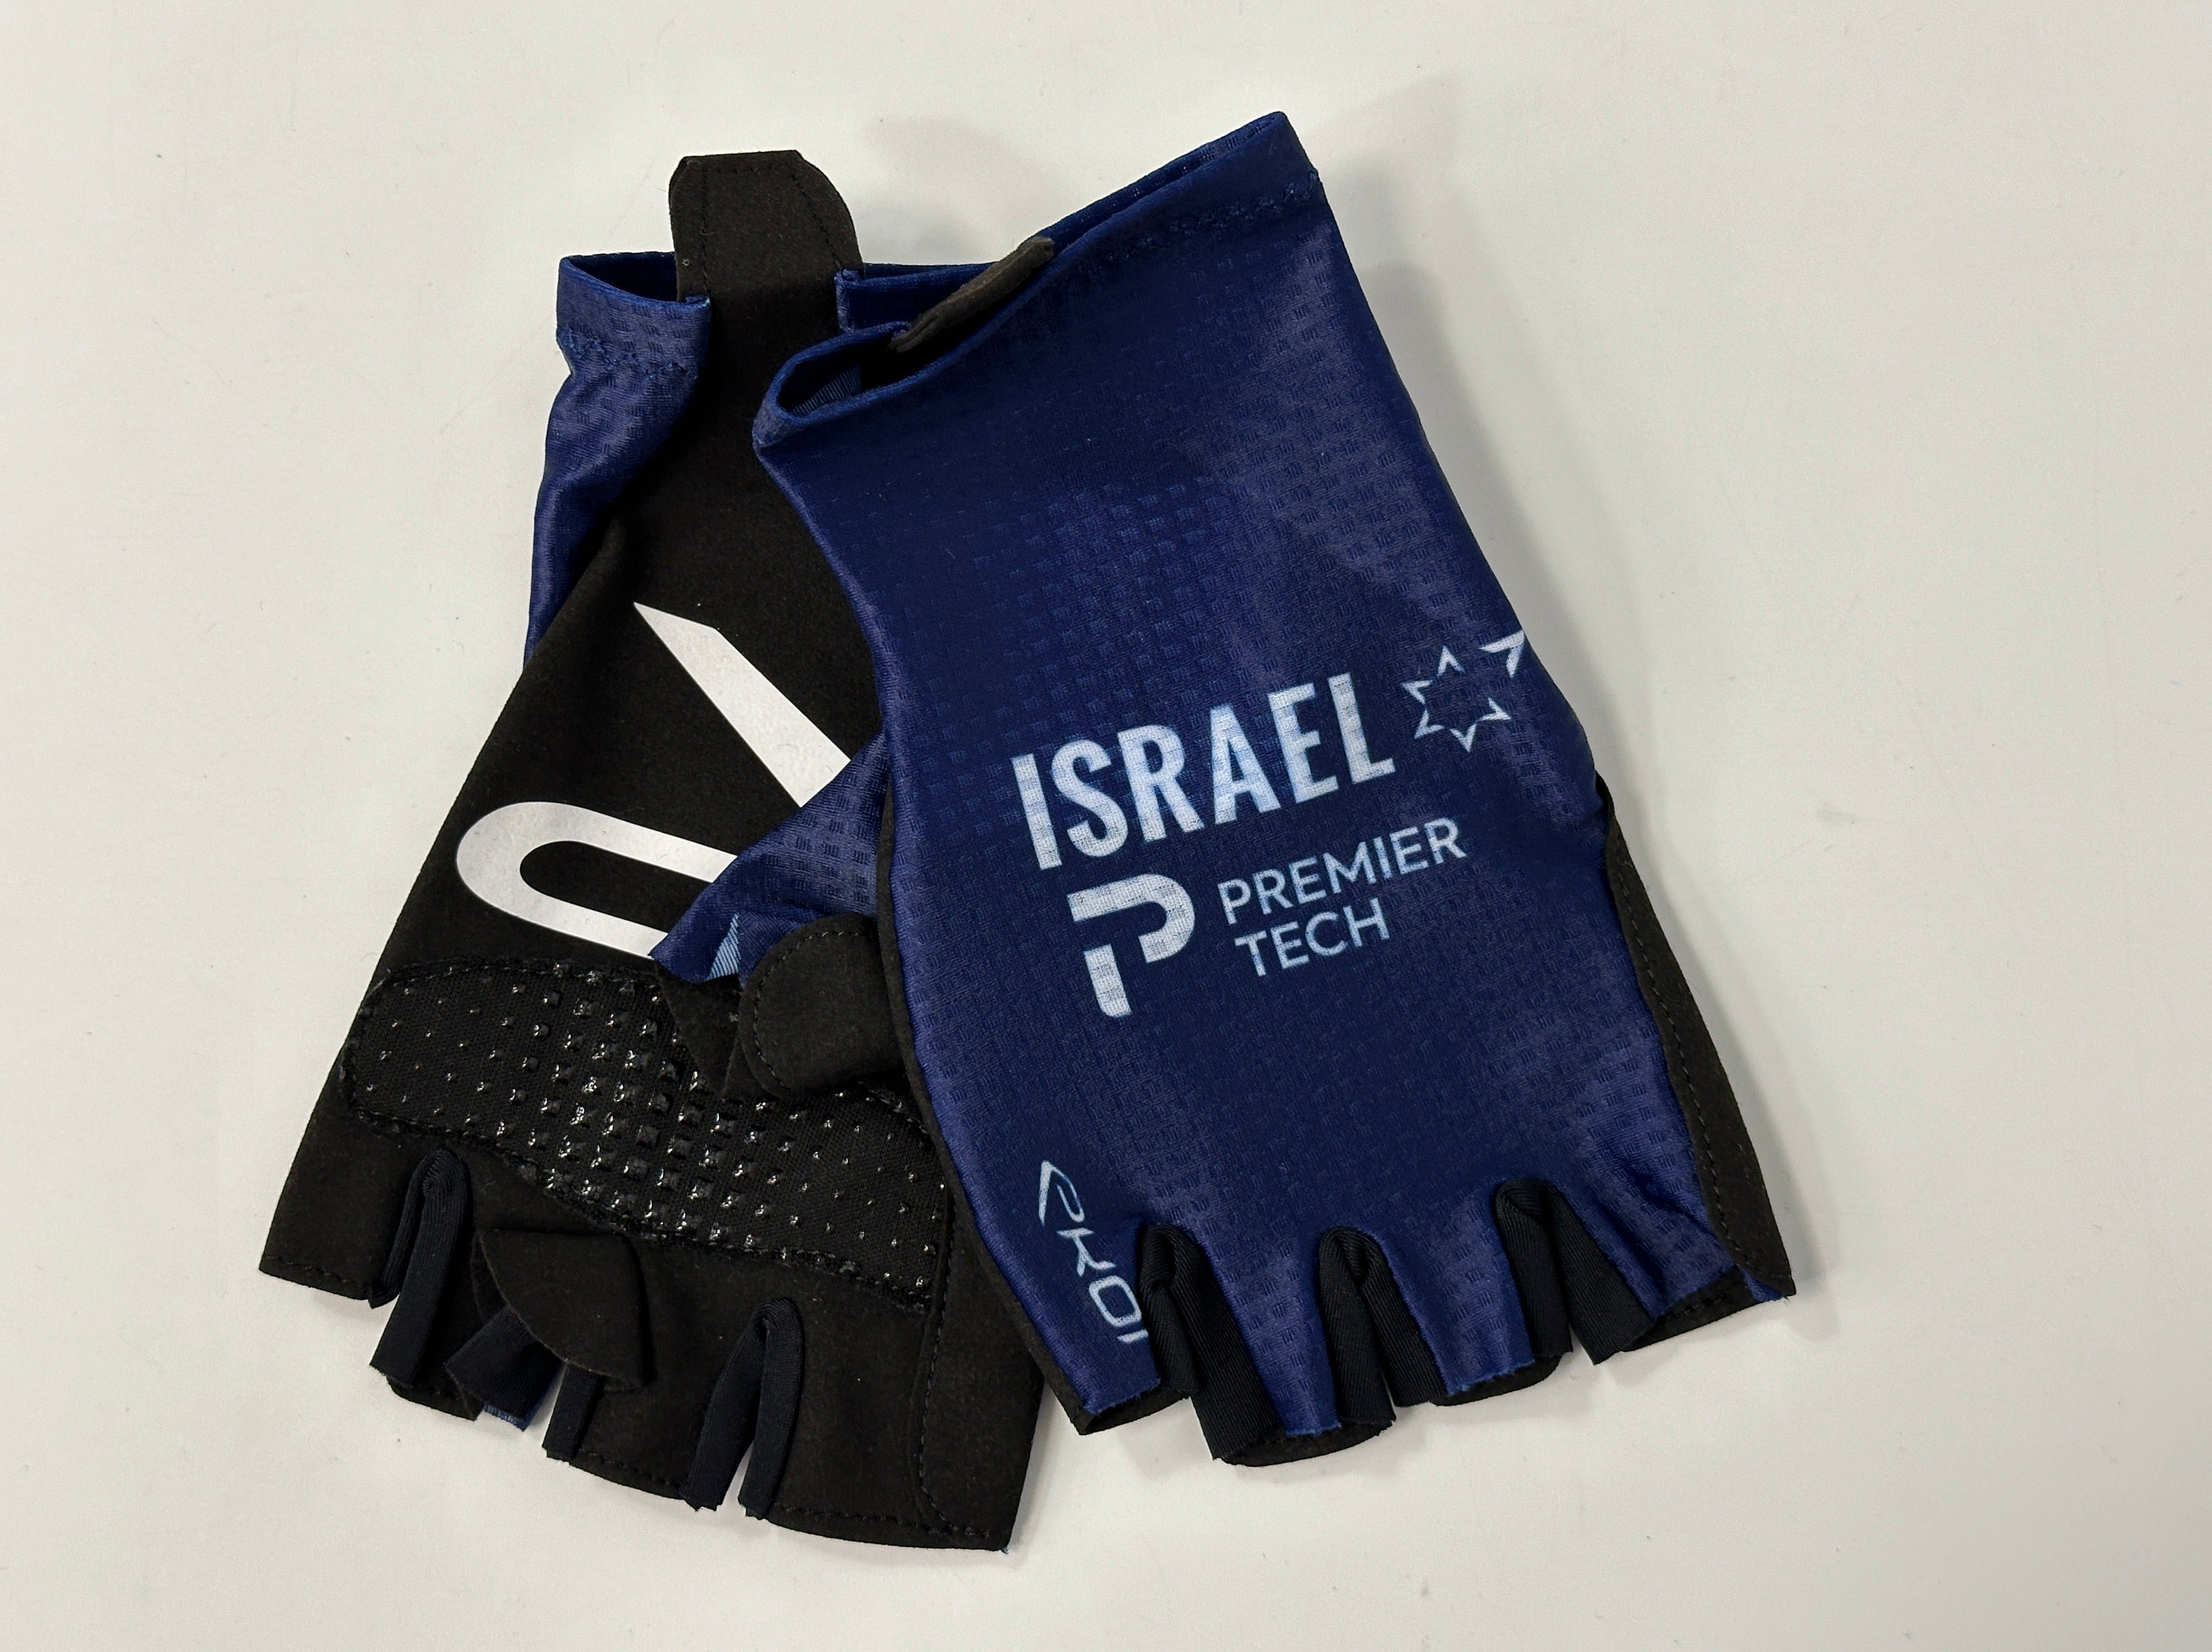 Team Israel Premier Tech - Race Gloves by Ekoi